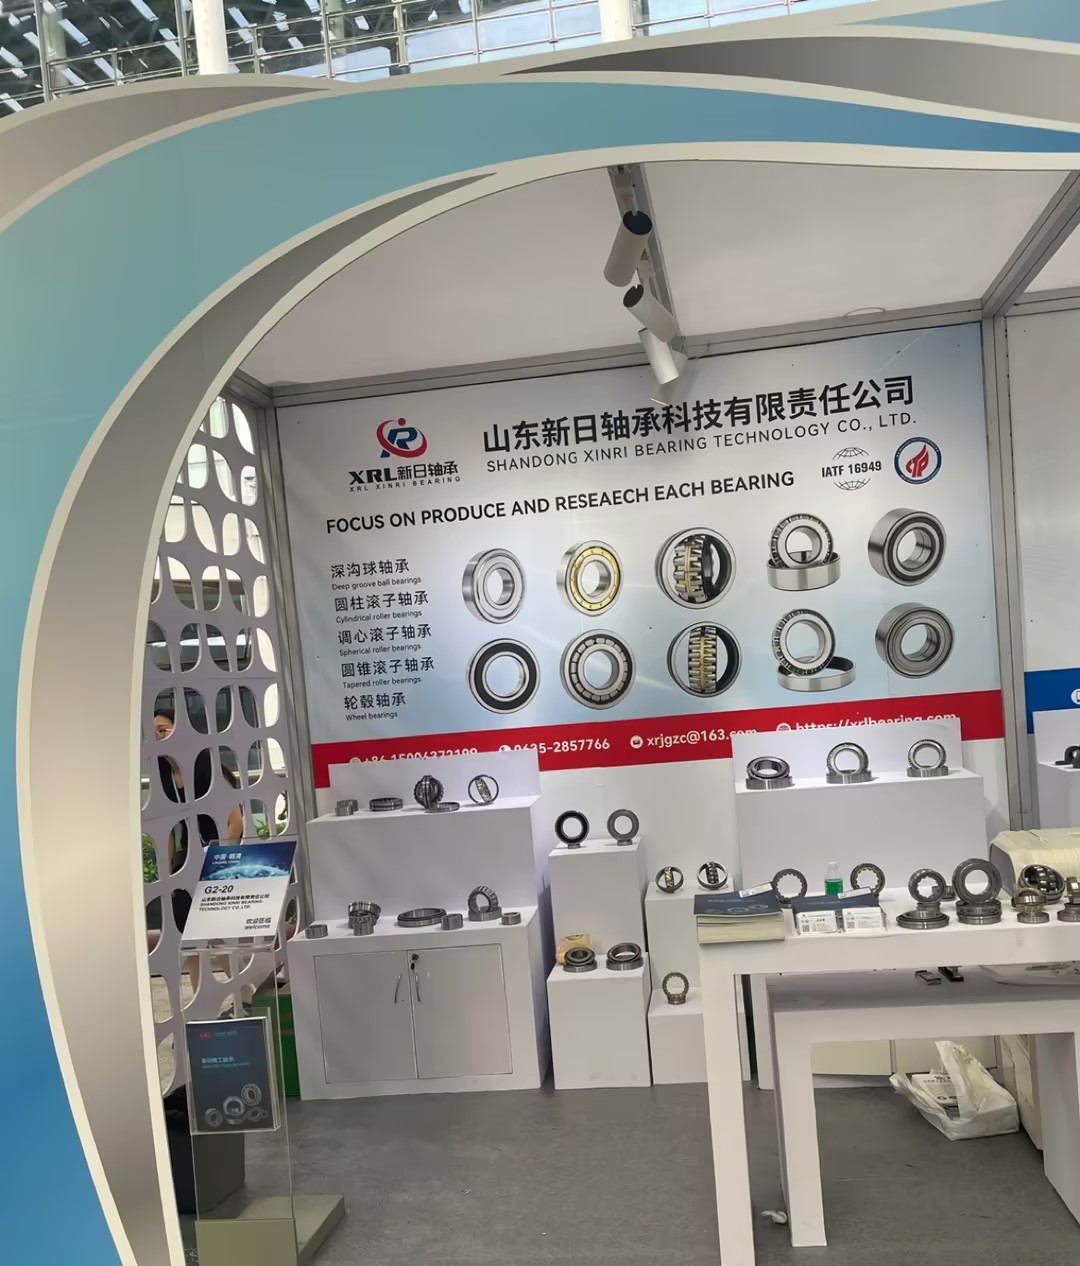 Shandong Xinri Bearing Showcases Innovative Product Line at Canton Fair G2-G20Shandong Xinri Bearing Technology Co., Ltd.